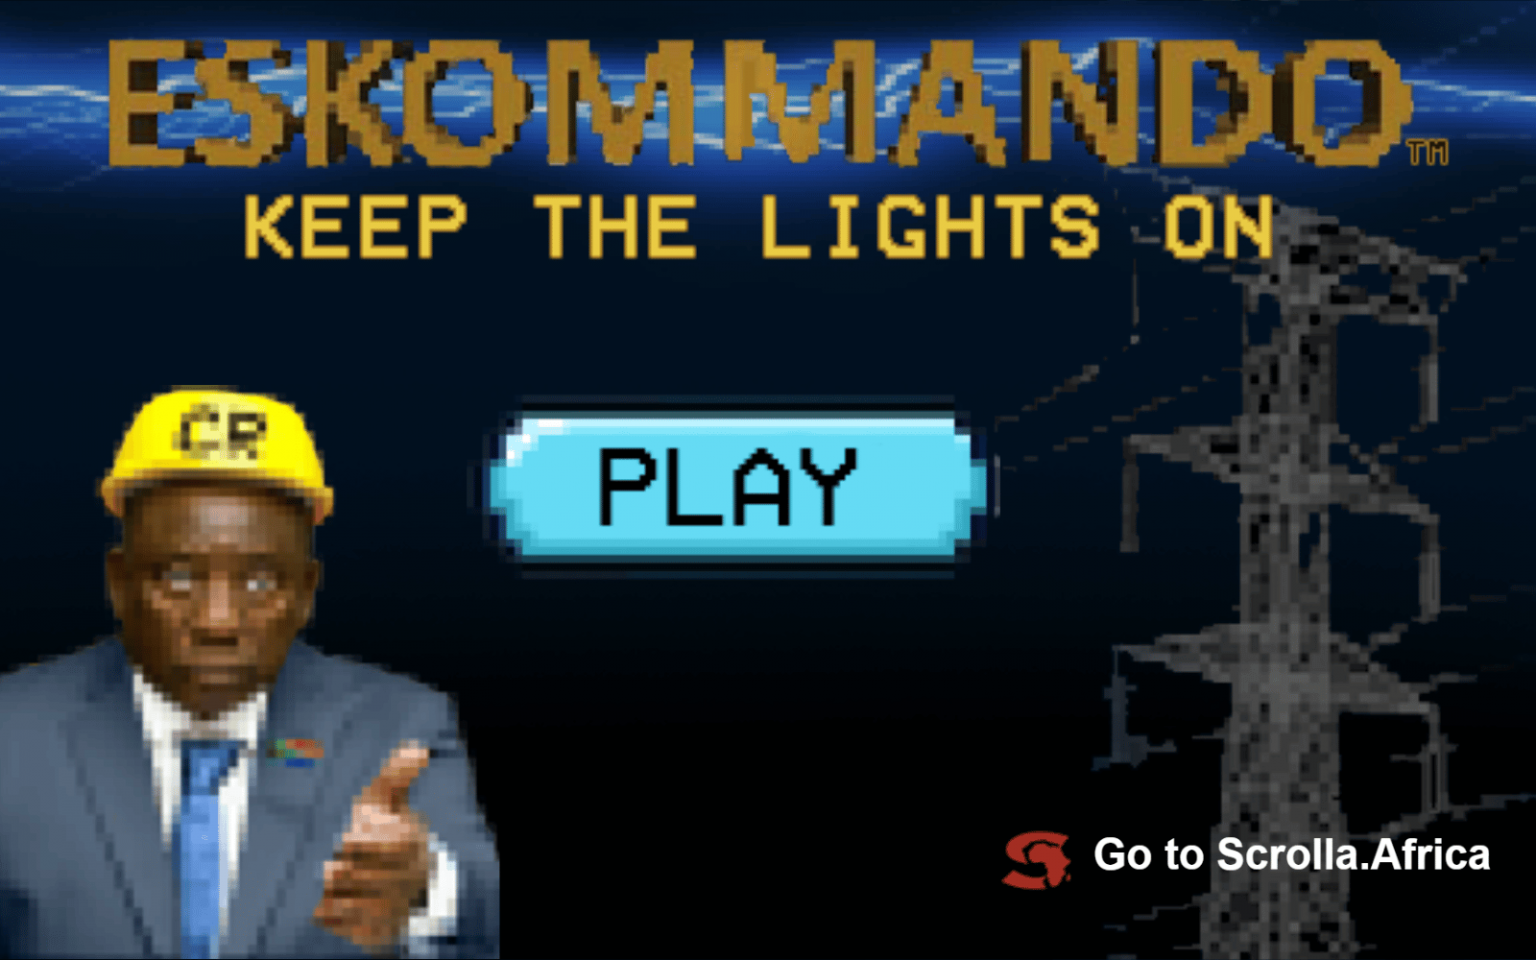 Eskommando header - Cyril wants you